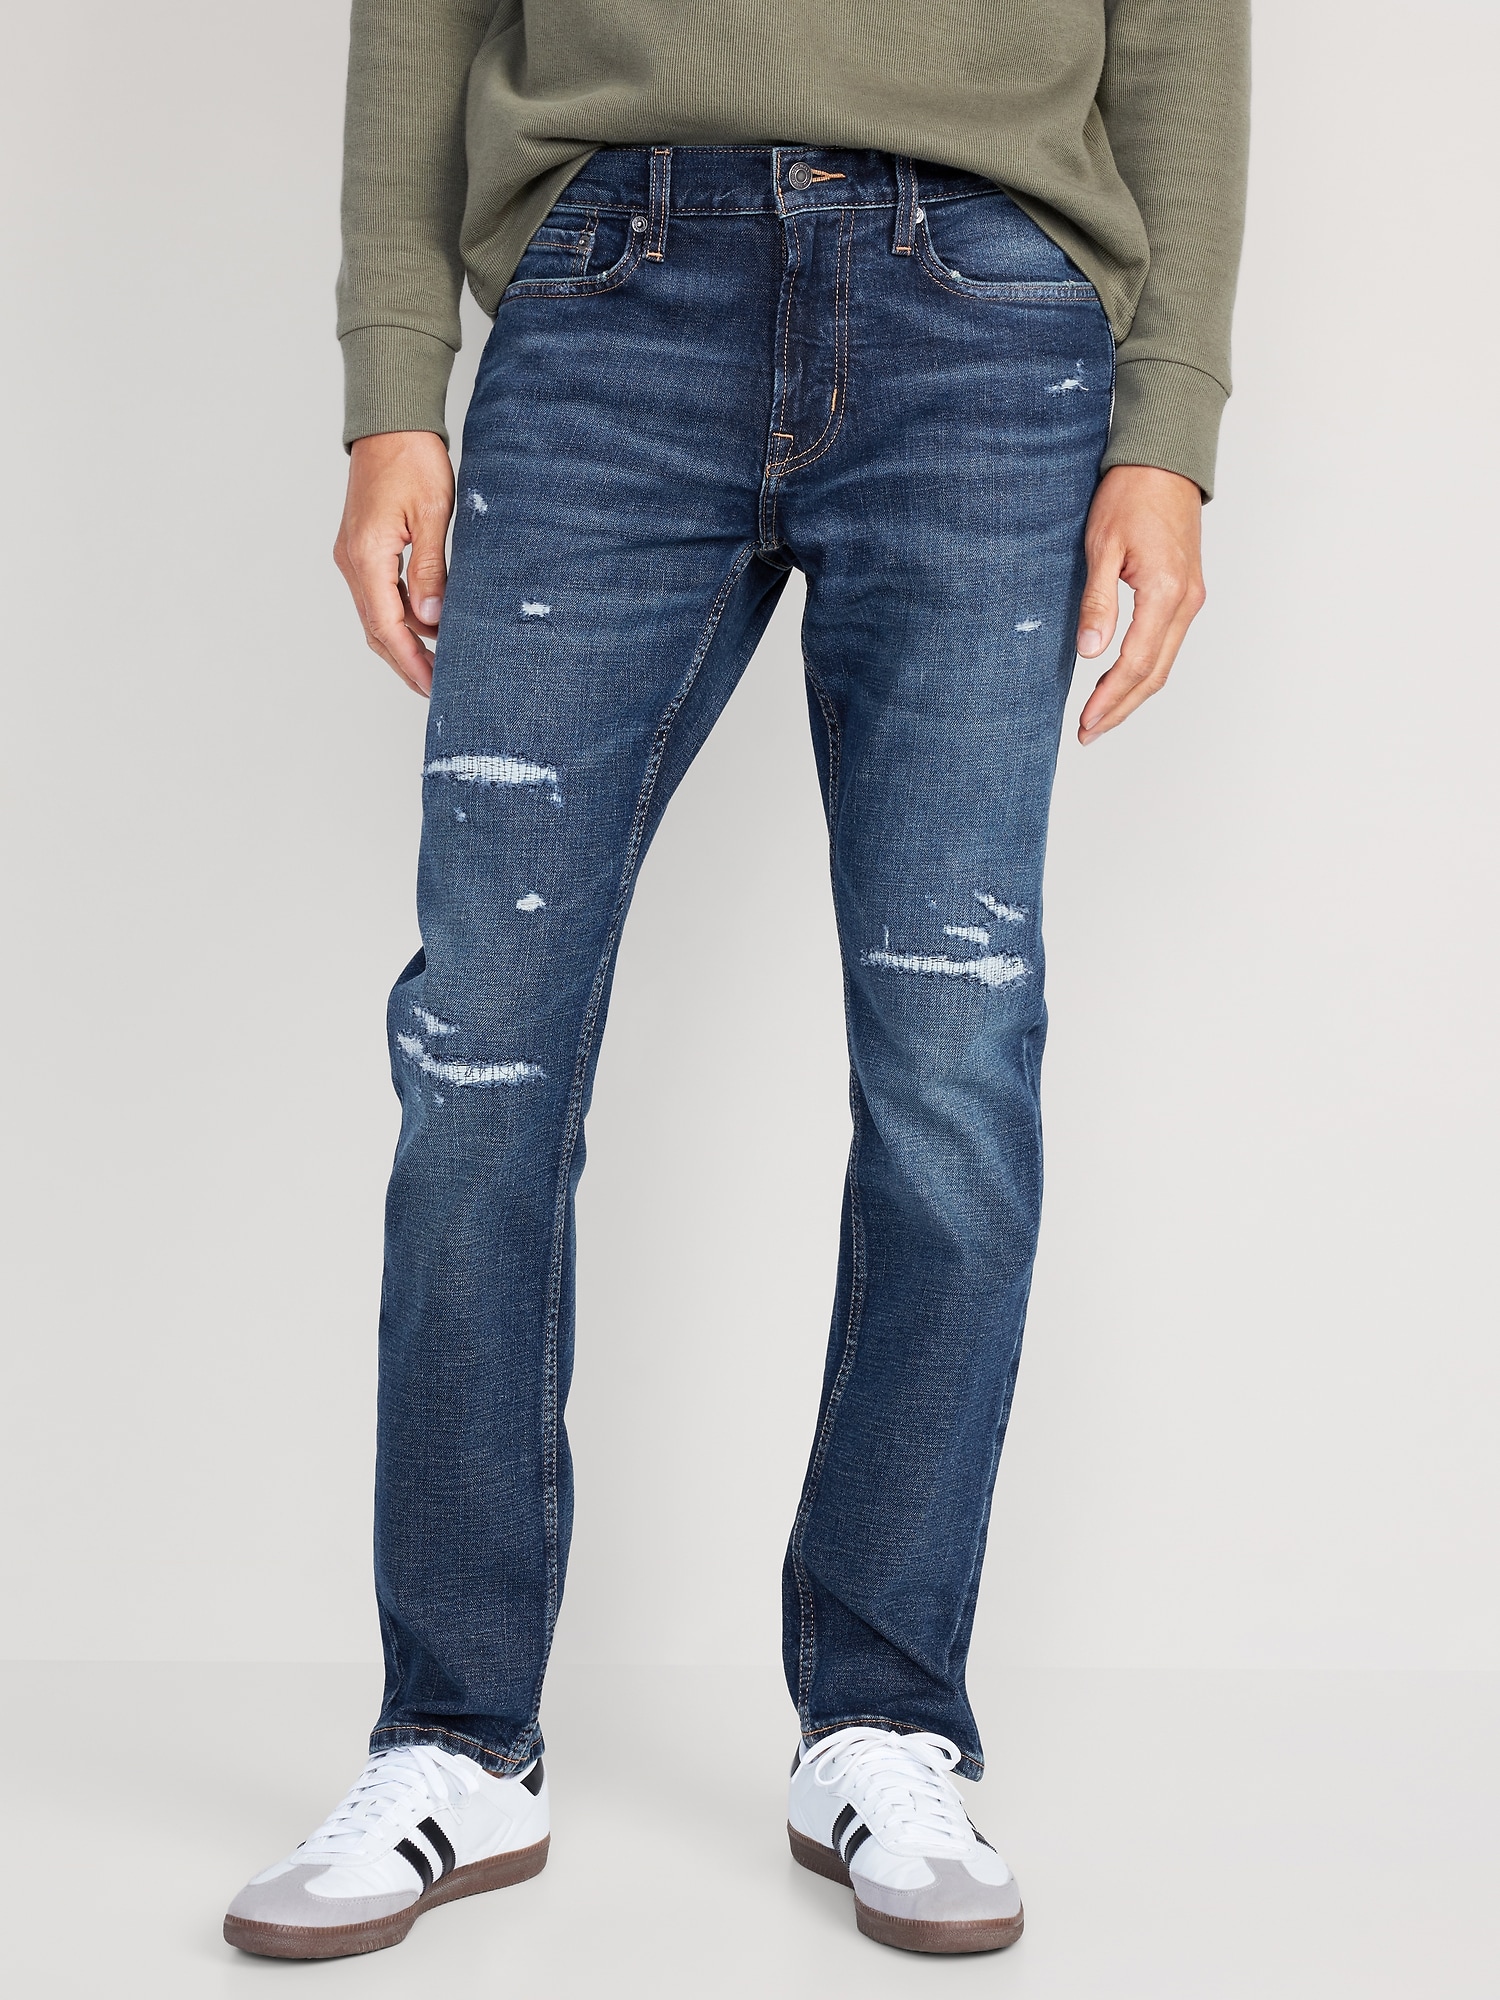 old navy dark wash opp slim jeans waist 32 L 30